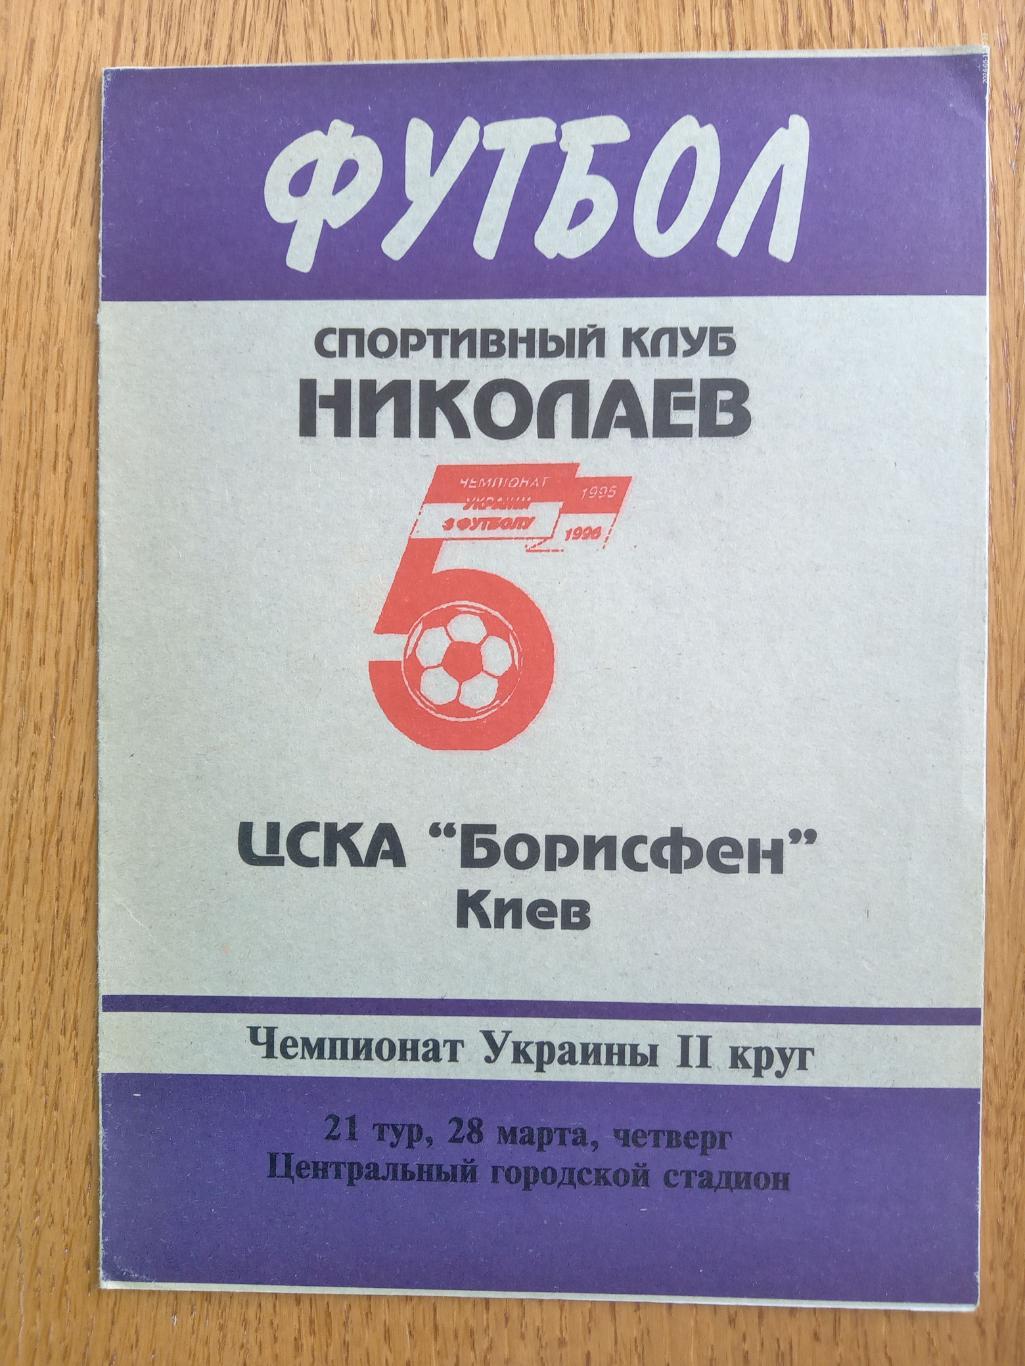 Миколаїв-ЦСКА Борисфен. 28.03.1996.#.м.